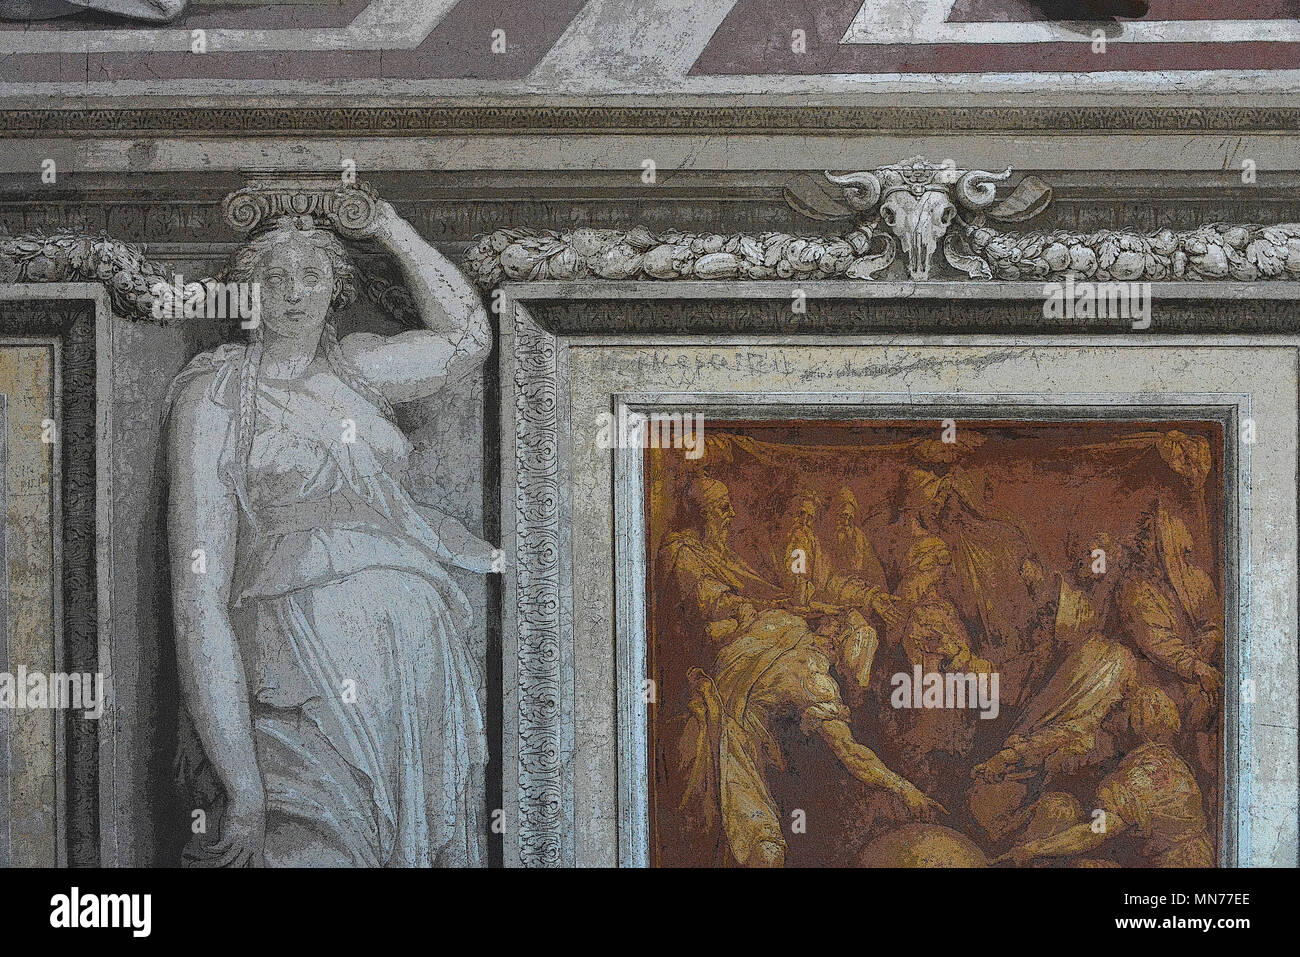 Dettaglio, grisaille (monocromatico) pittura di una cariatide, mimando la scultura in marmo, circostante false "bronze" rilievo (reso in PS), Roma, Italia Foto Stock